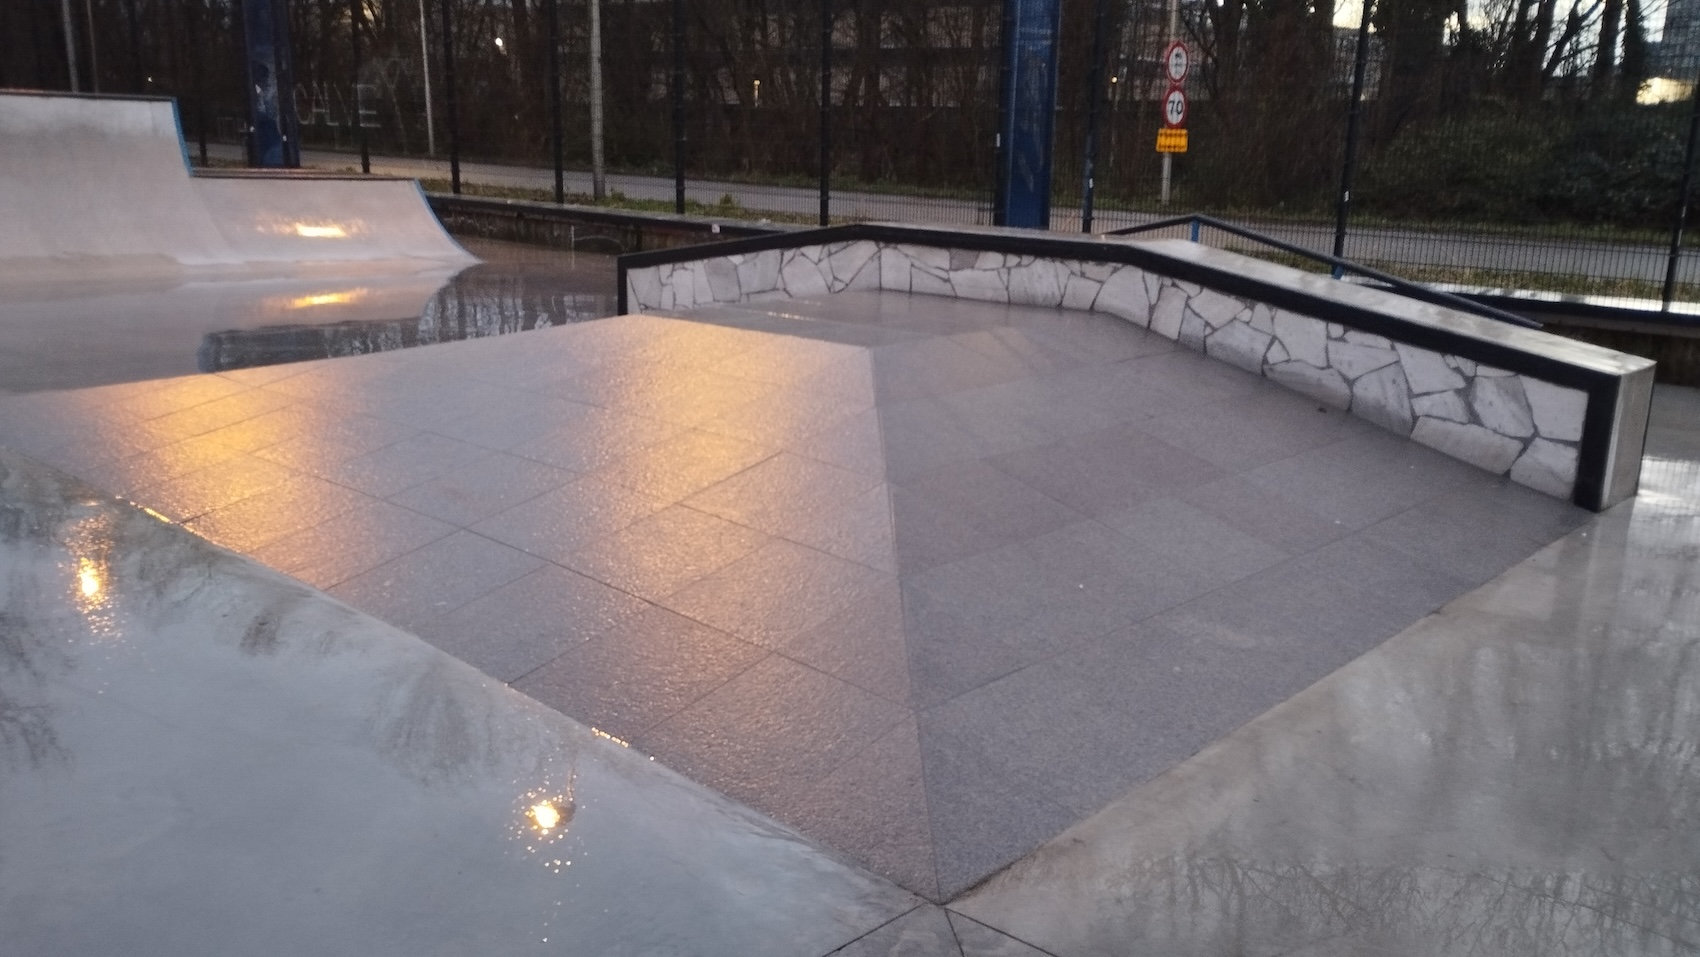 Middenberm skatepark